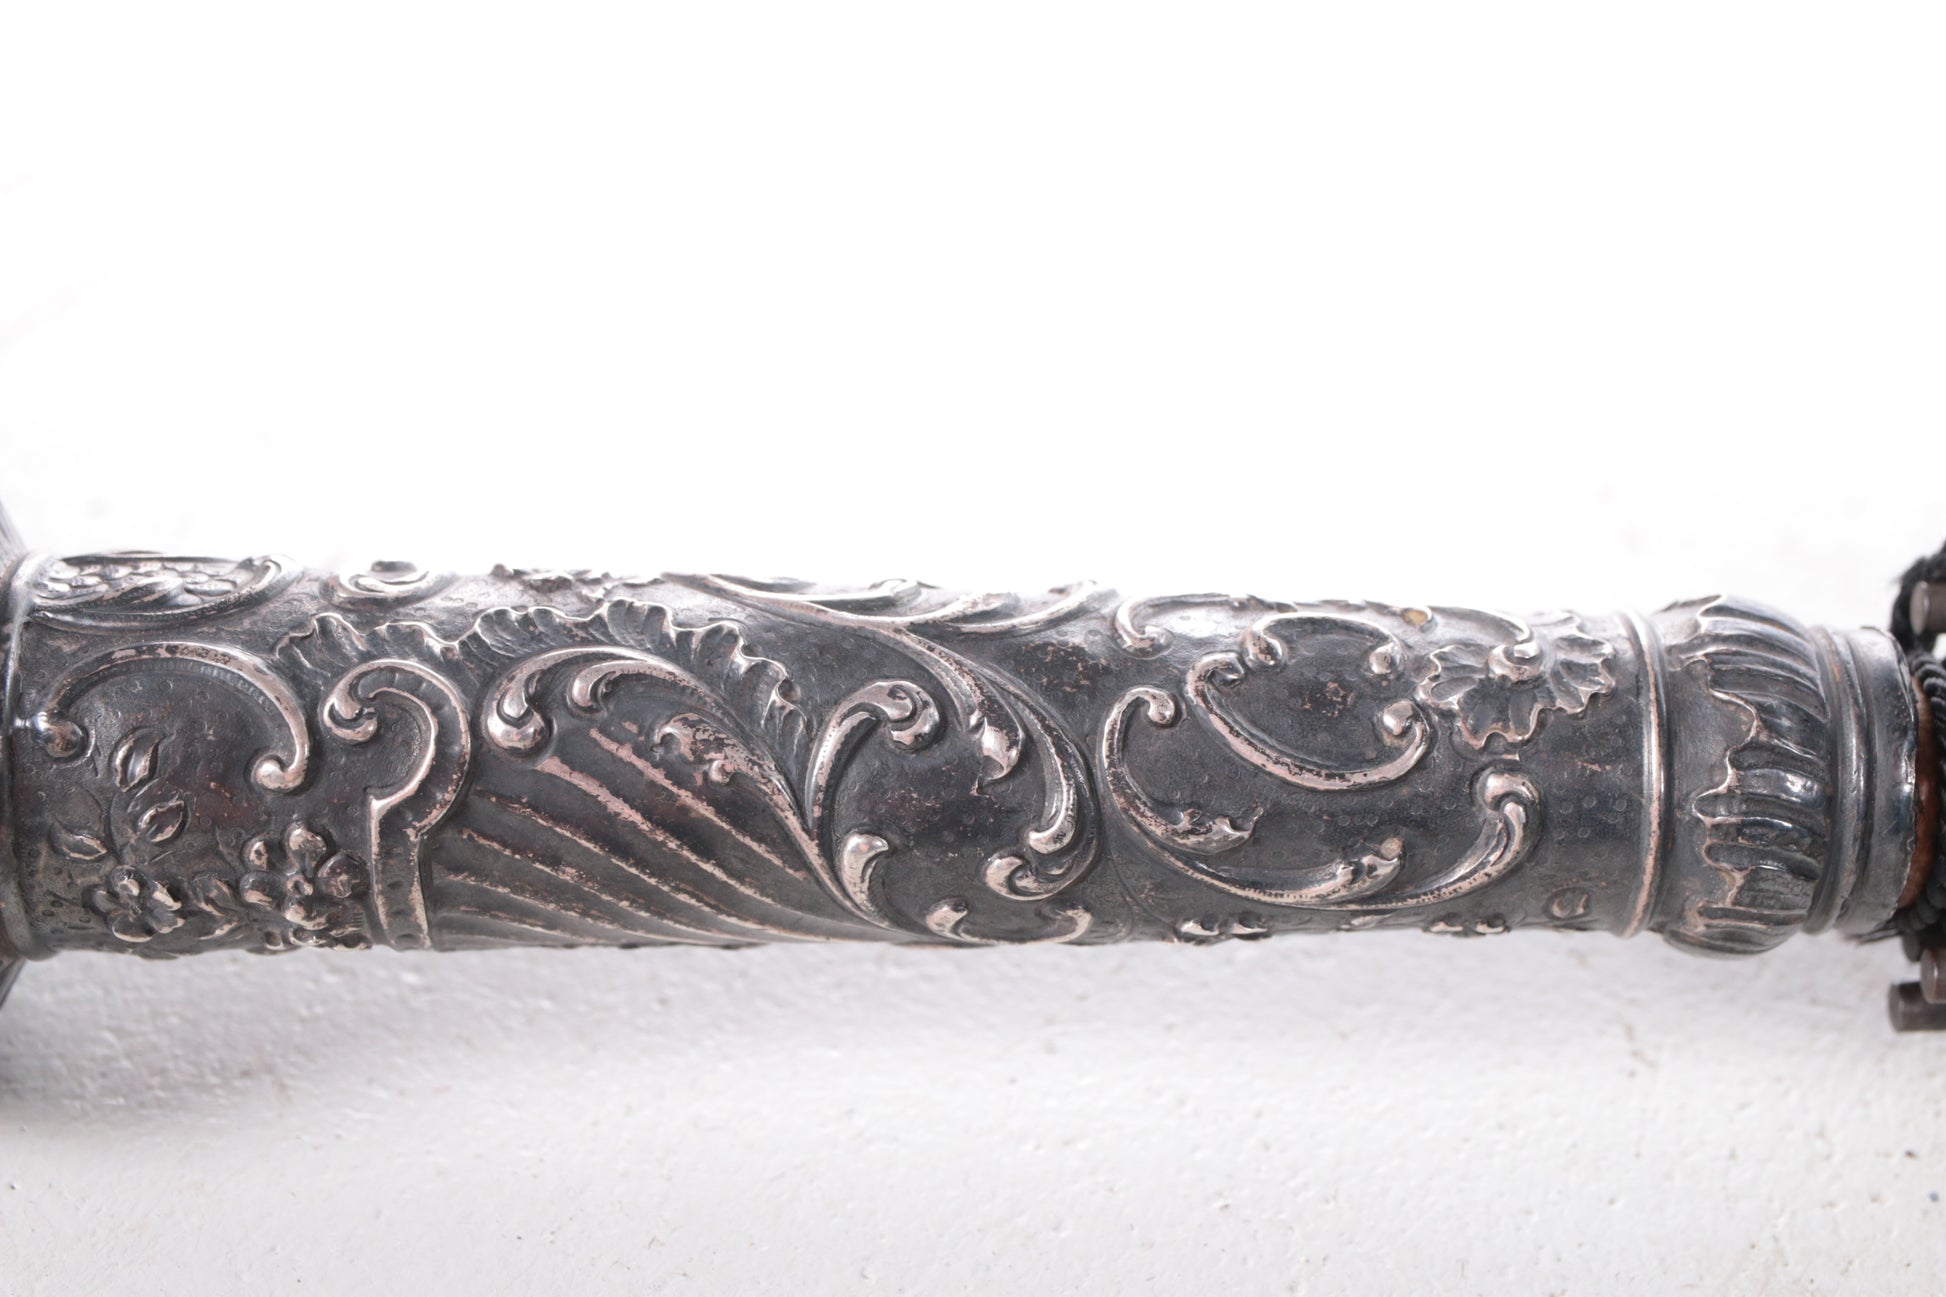 Antieke zwarte paraplu van zijde met zilveren handvat. detail handvat